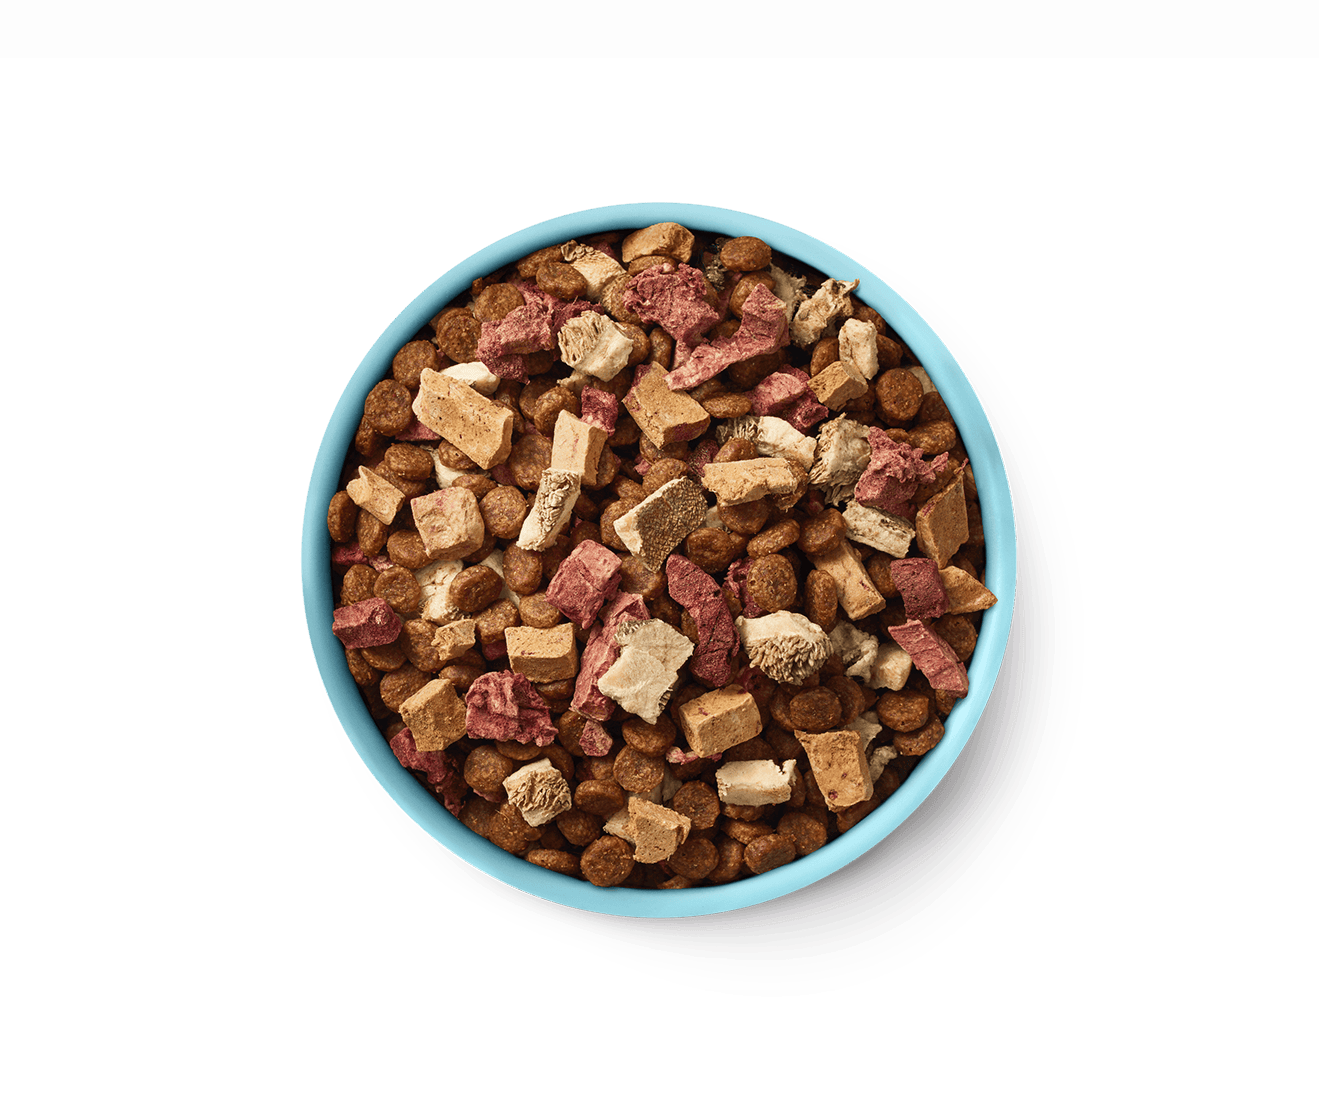 Beef dog food bowl